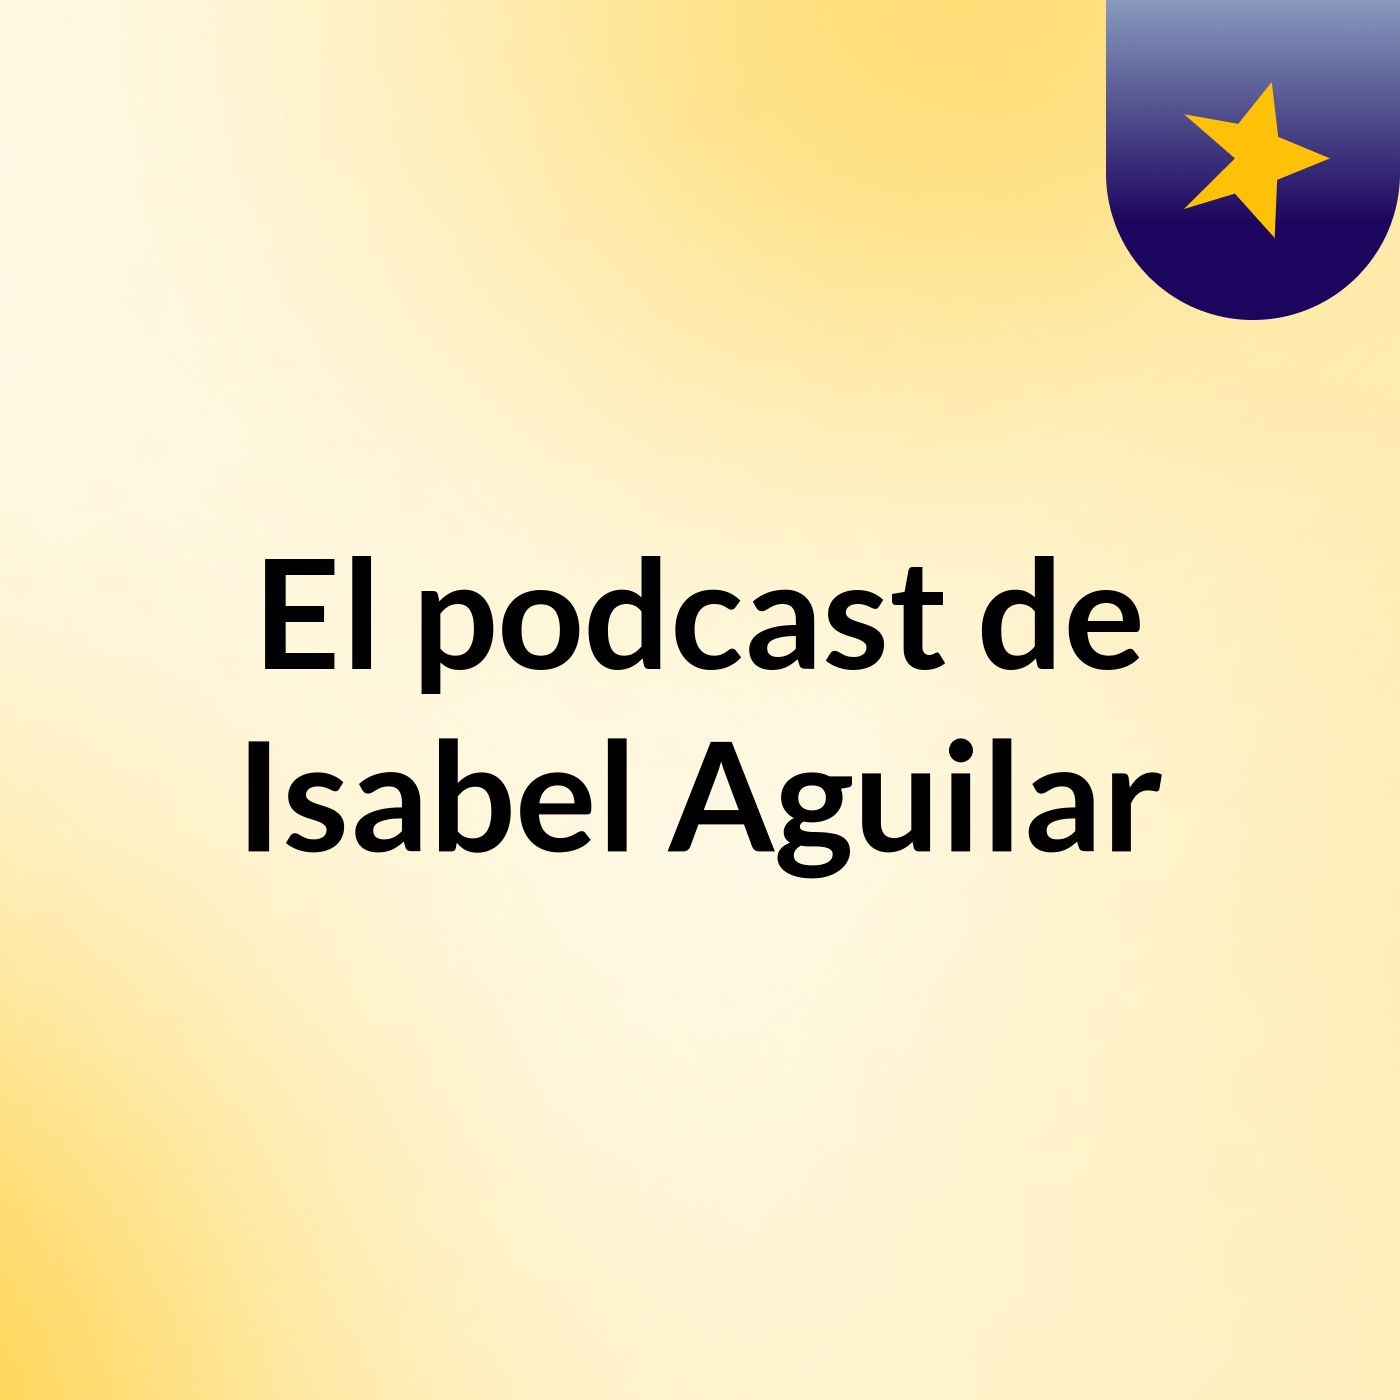 Episodio 4 - El podcast de Isabel Aguilar